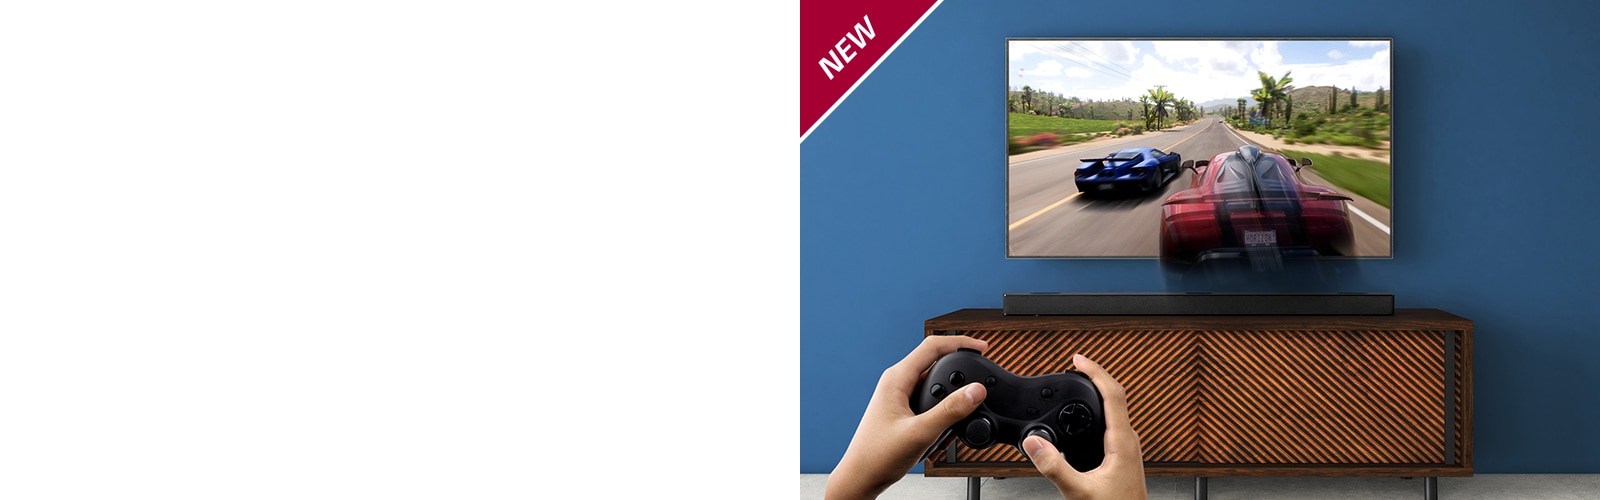 تلویزیون ال جی روی دیوار نصب شده است و یک بازی اتومبیلرانی را نشان می دهد. ساندبار ال جی در قفسه قهوه ای، درست در زیر تلویزیون ال جی قرار دارد. مردی دسته بازی در دست دارد. علامت «جدید» (NEW) در گوشه بالا و سمت چپ نشان داده شده است.